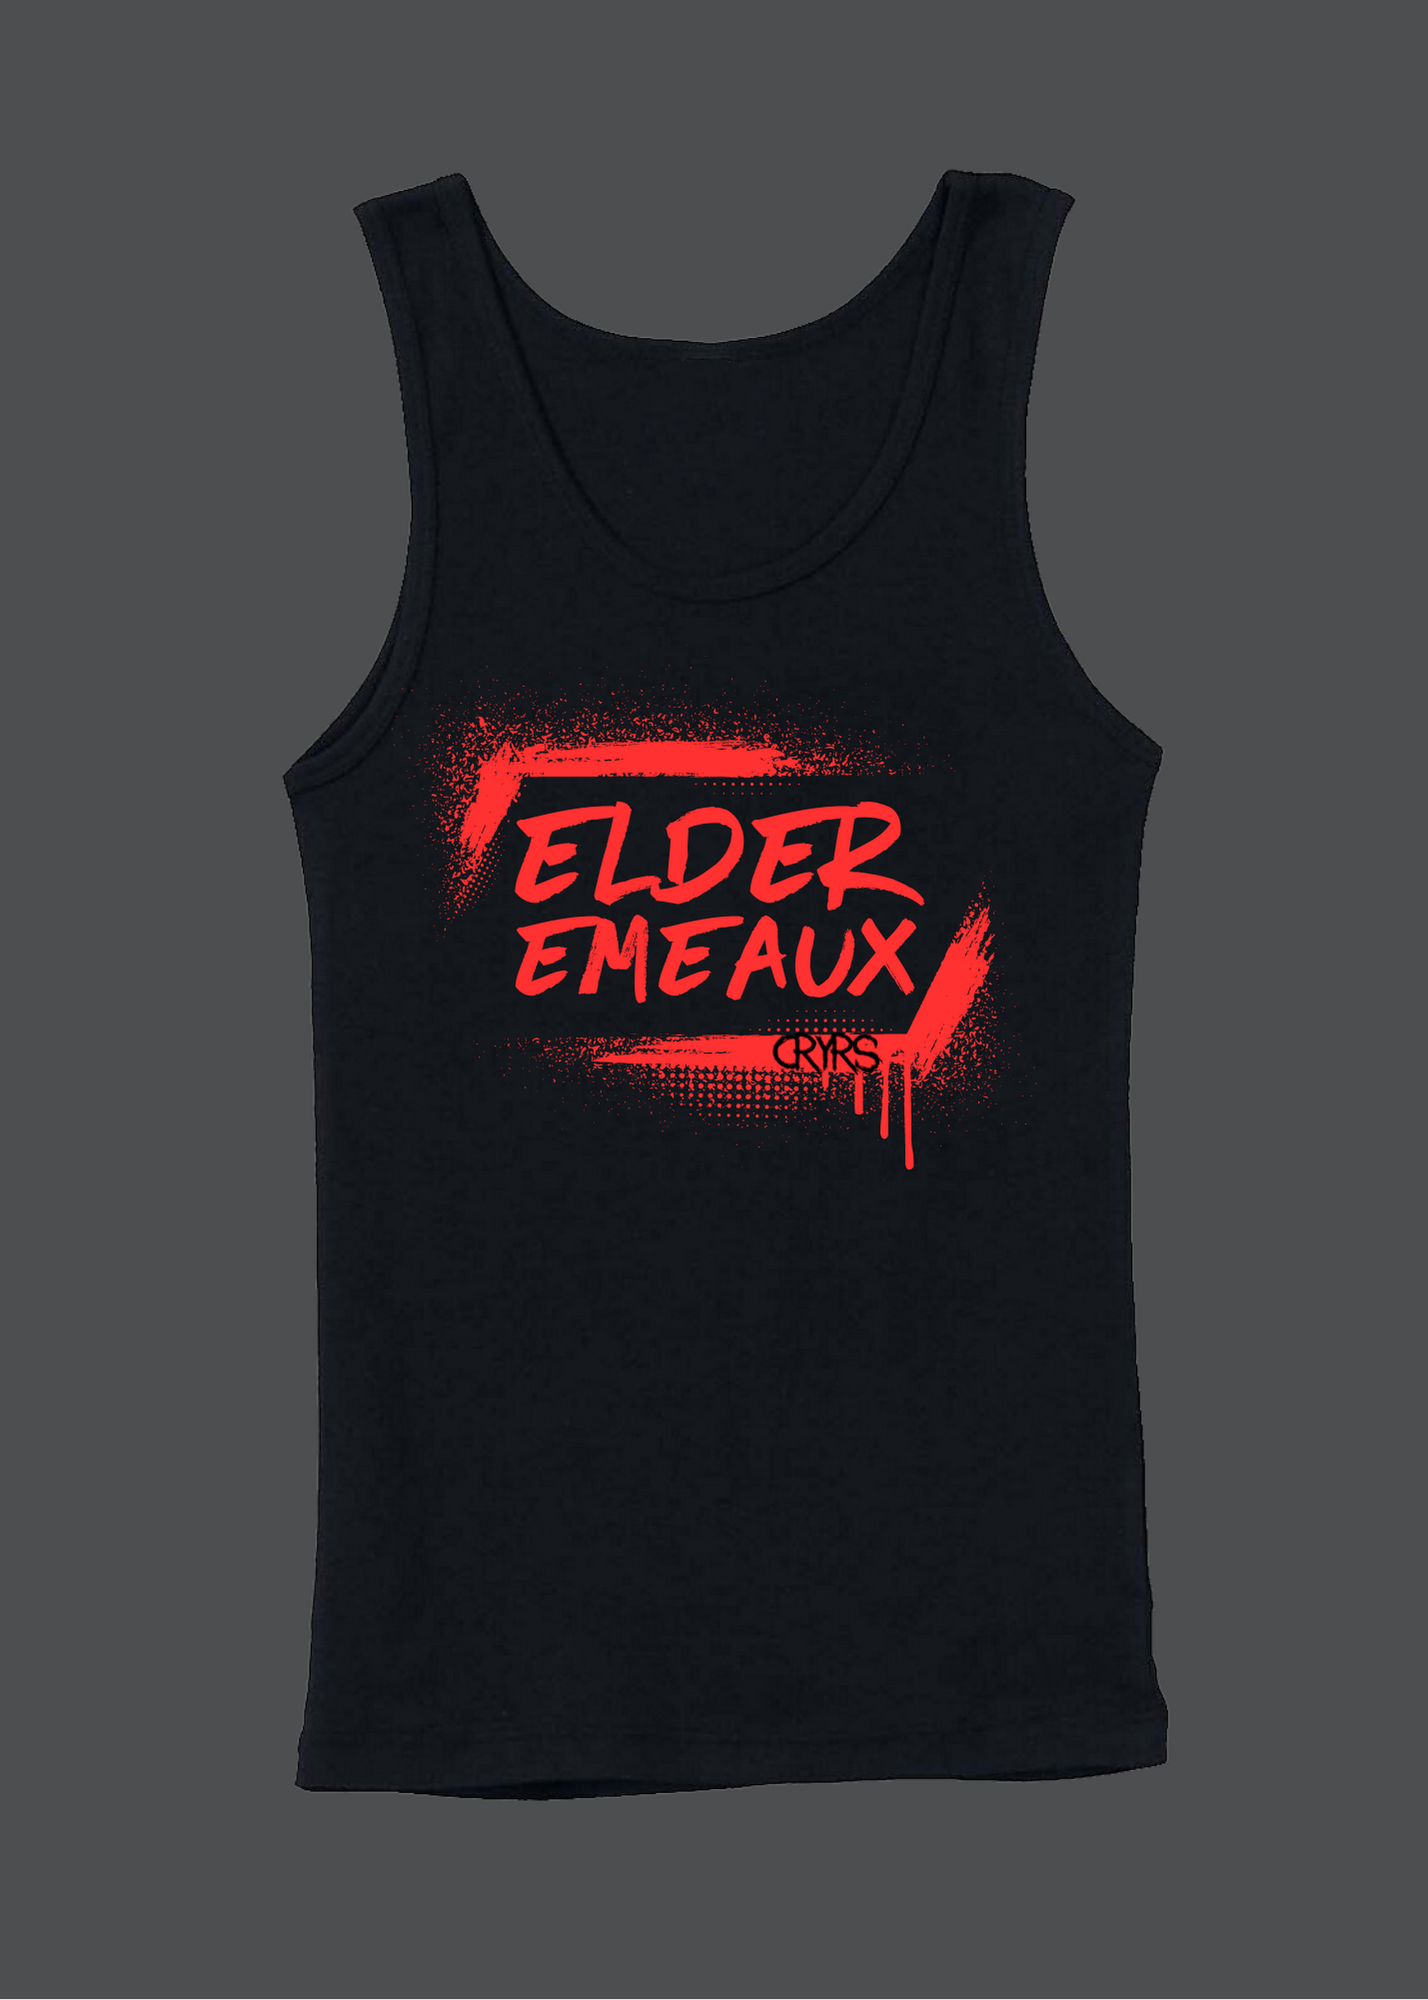 Elder Emeaux (Red) Womens Tank